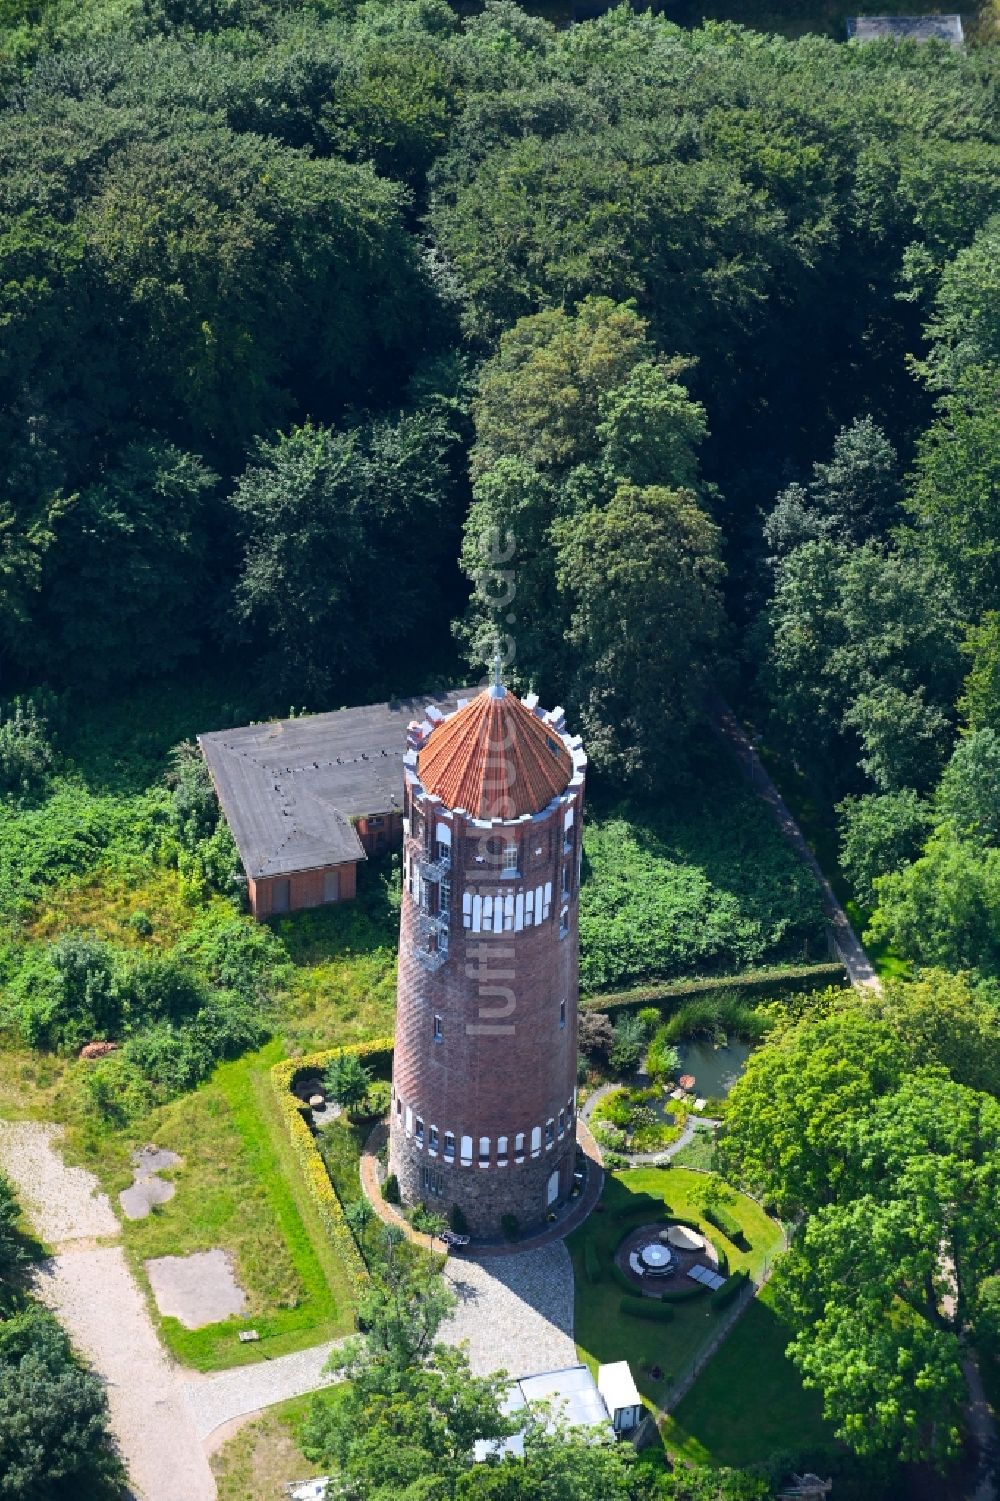 Luftbild Flensburg - Industriedenkmal Wasserturm in Flensburg im Bundesland Schleswig-Holstein, Deutschland